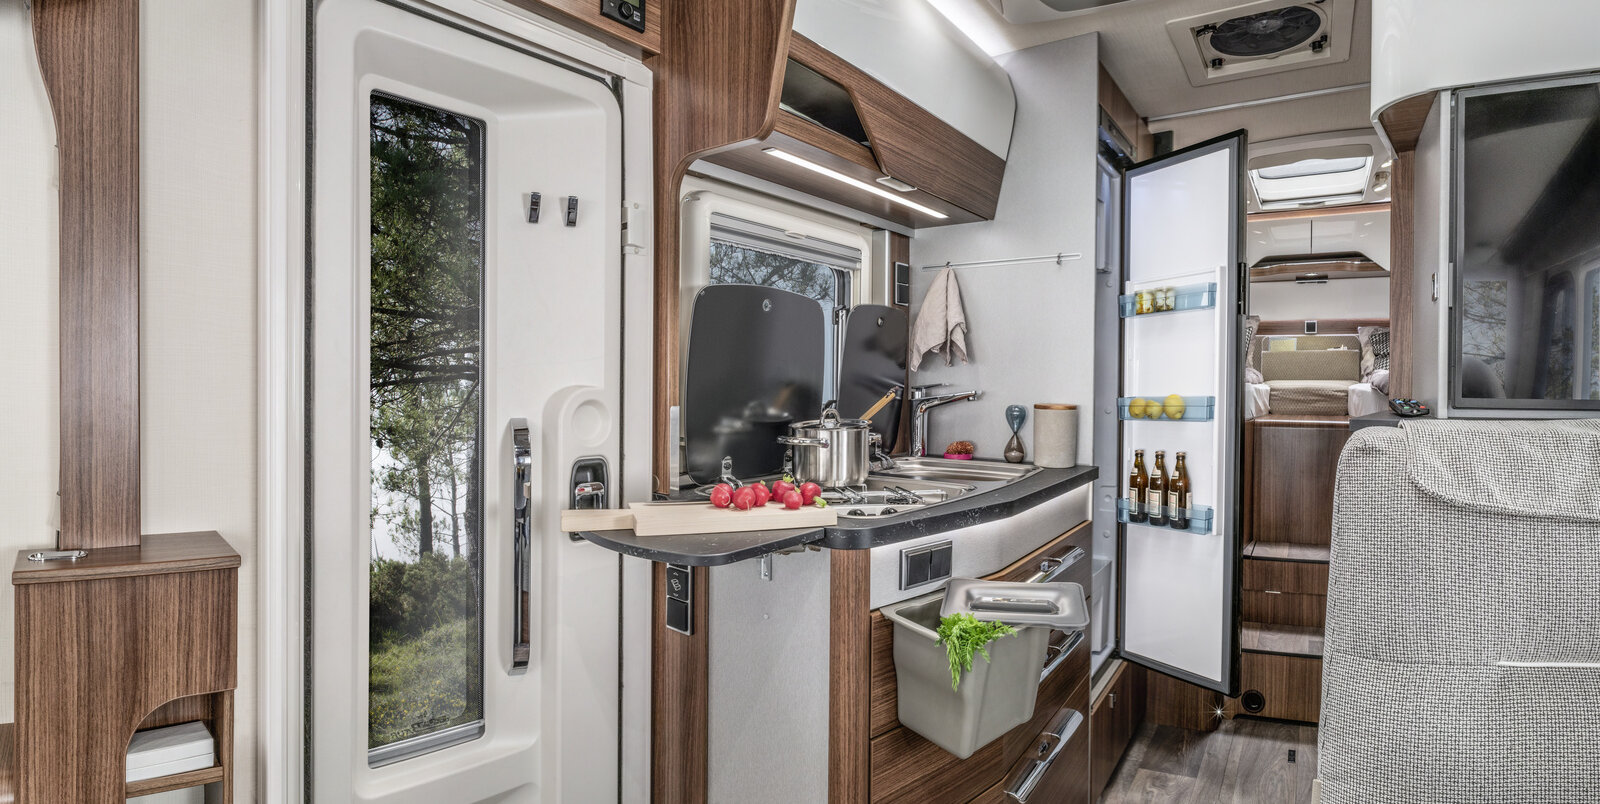 Cucina accanto alla porta d’ingresso, estensione piano di lavoro della cucina, pattumiera sul cassetto estraibile, frigorifero aperto nell’HYMER B-MC